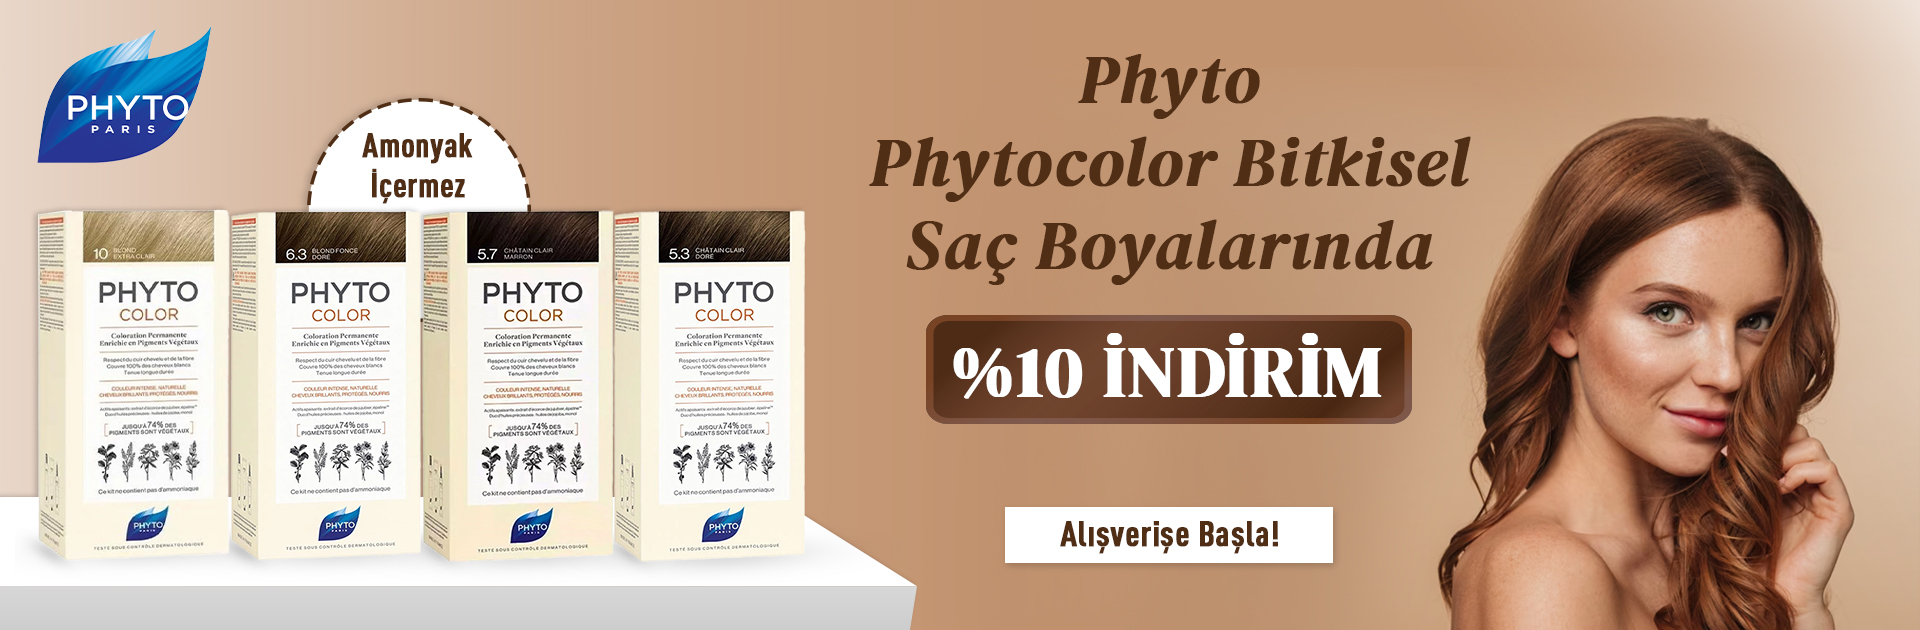 phyto-sac-boyasi